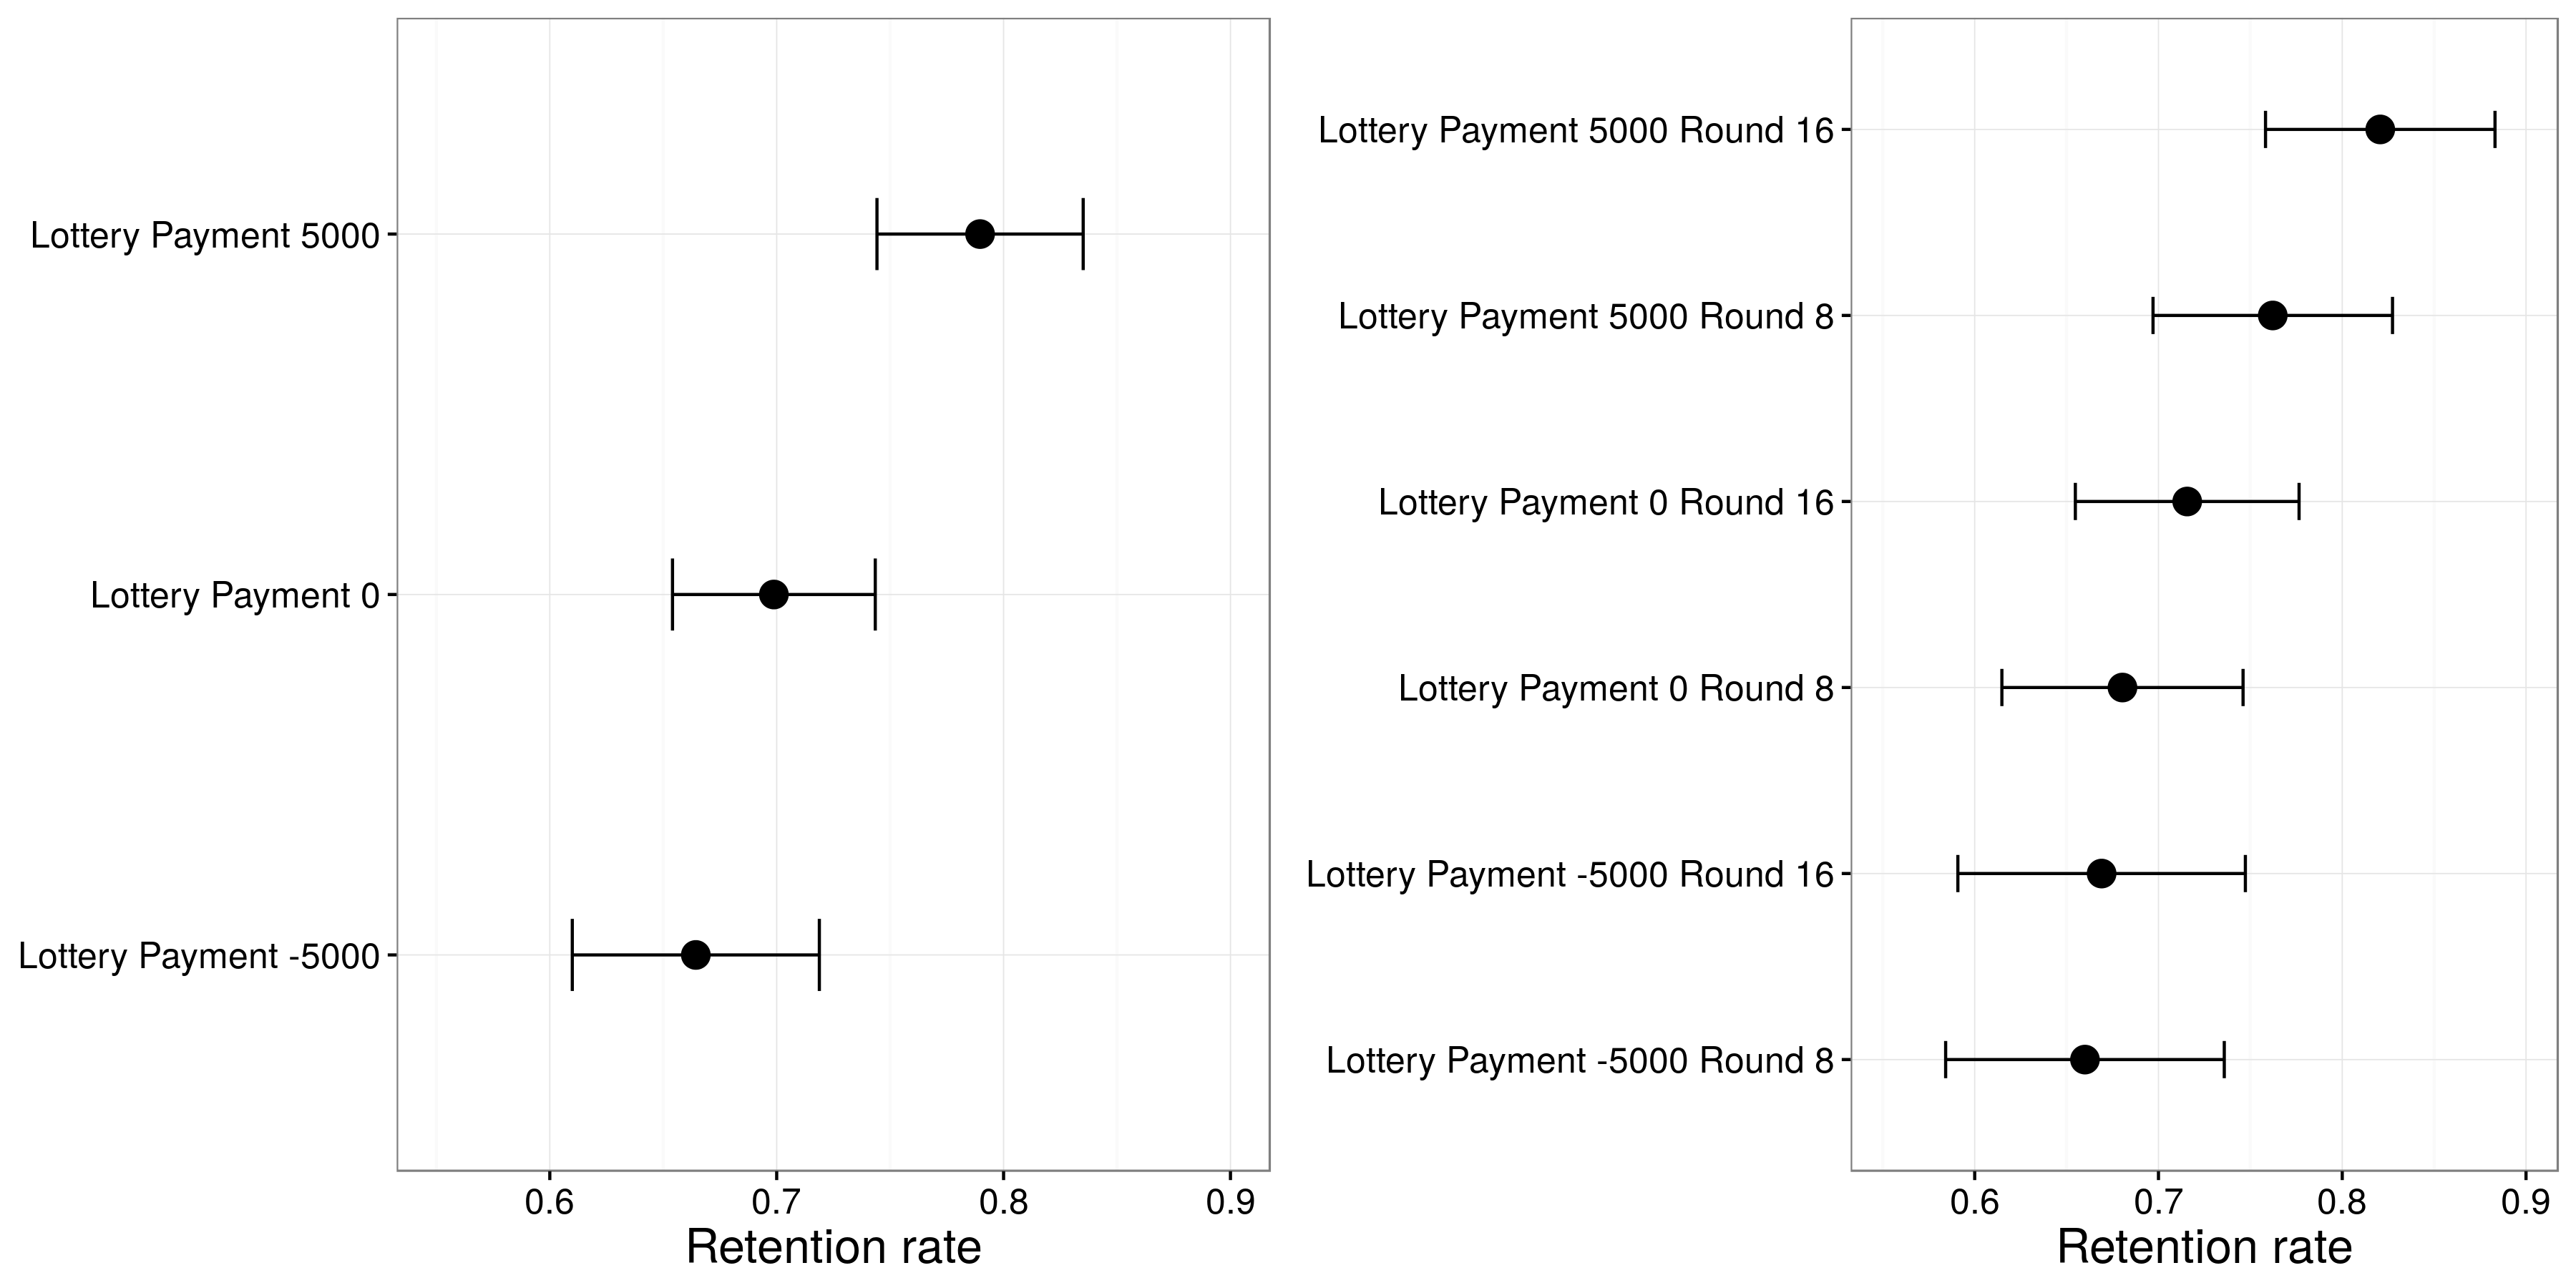 આકૃતિ 4.15: હ્યુબર, હિલ, અને લેન્ઝના પરિણામો (2012). લોટરીથી લાભ મેળવનાર સહભાગીઓ તેમના ફાળવણીકારને જાળવી રાખવાની શક્યતા વધારે હતા, અને જ્યારે લોટરી રાઉન્ડમાં 16-રાઉન્ડમાં થયું ત્યારે - તે જ્યારે રાઉન્ડમાં બન્યું ત્યારે - તે હબેર, હિલ, અને લેન્ઝથી અપનાવવામાં આવ્યું હતું. 2012), આકૃતિ 5